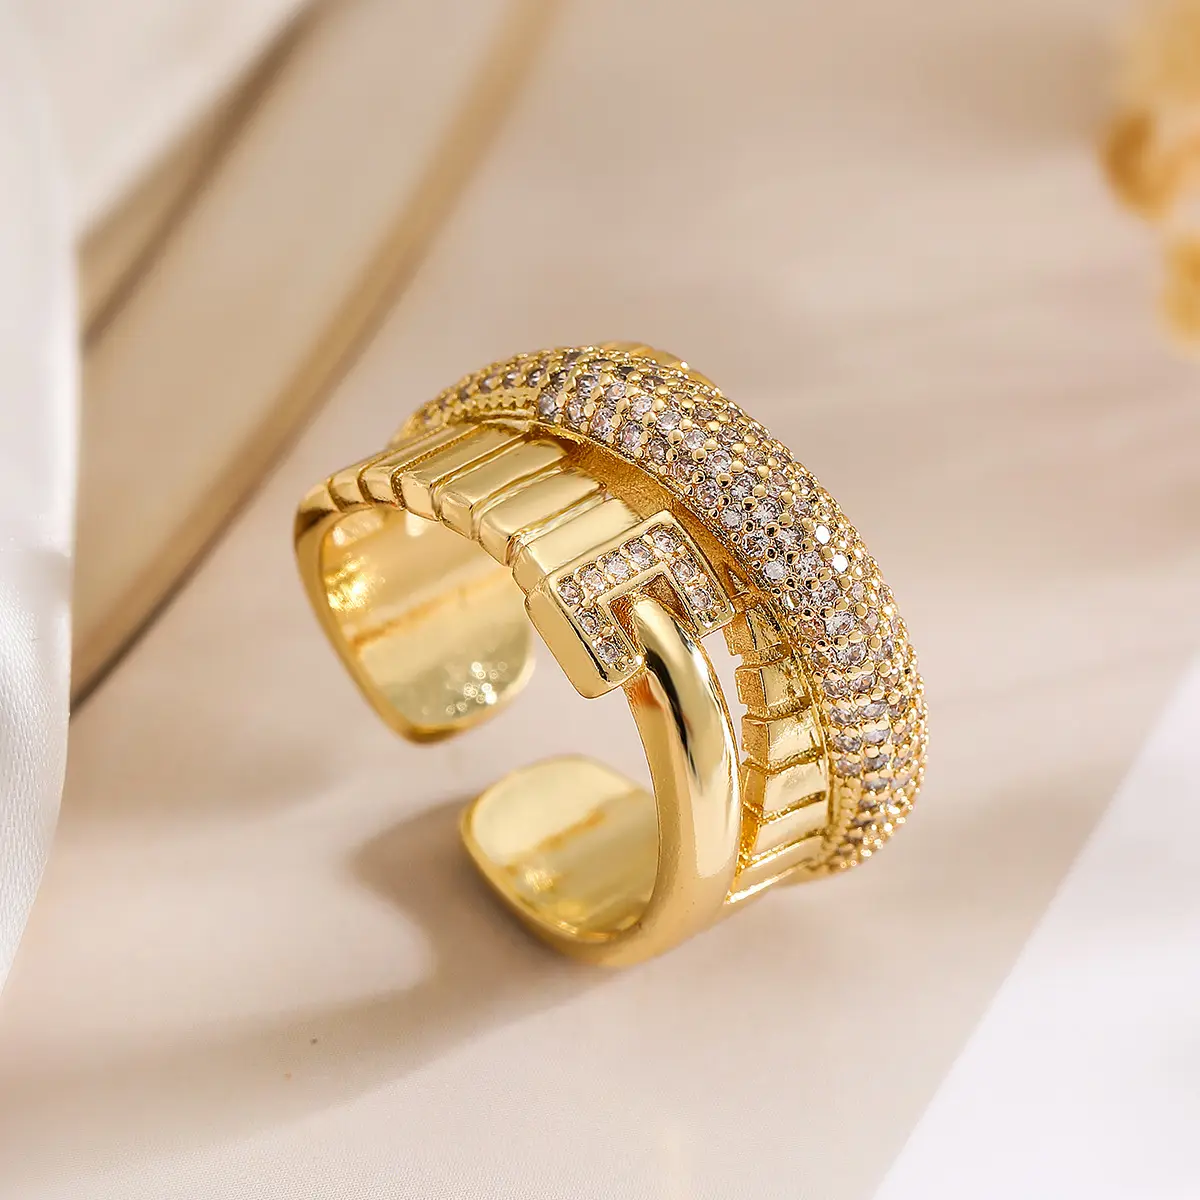 แหวนเพทายทอง 18K ชุบทองแดงเรียบง่ายแฟชั่นข้ามพรมแดนในยุโรปและอเมริกา